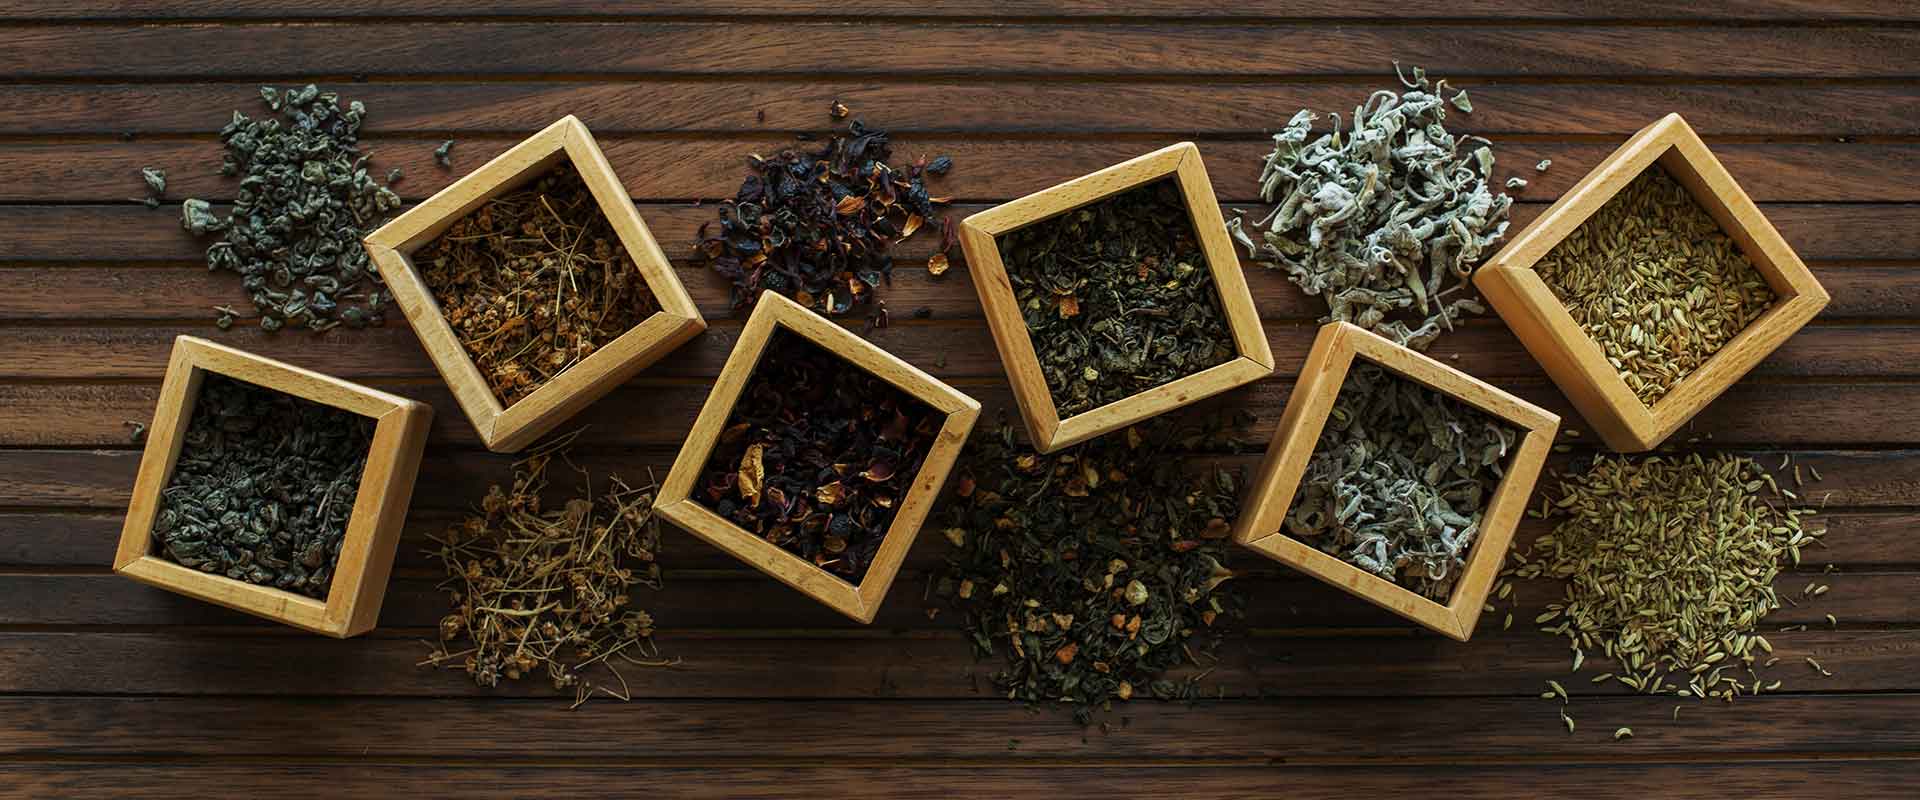 Thurson Teas | Historia del té